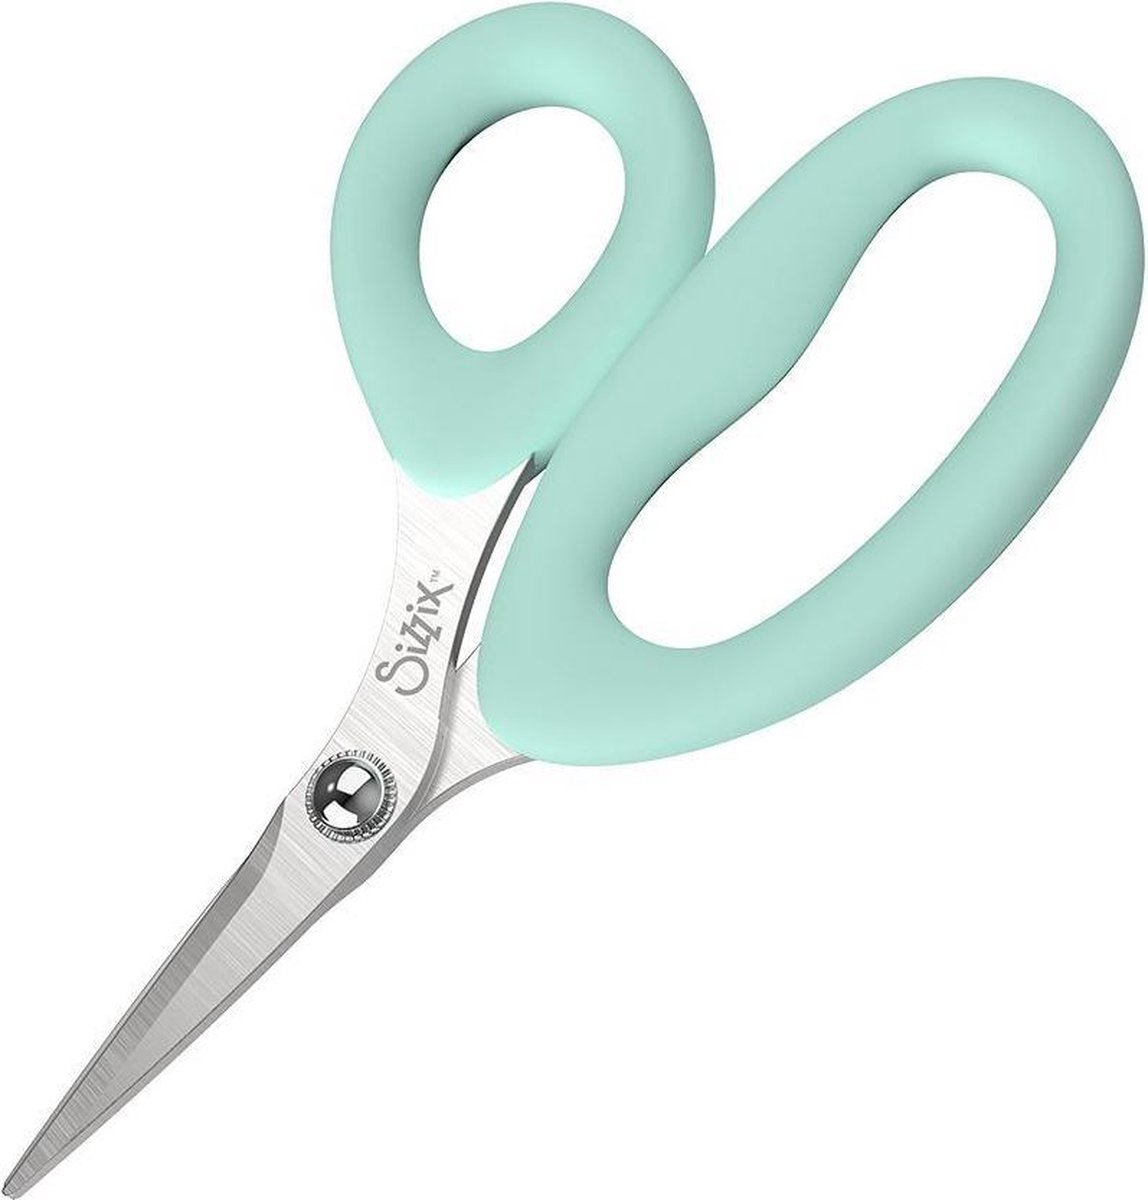 Sizzix Making Tool Scissors - Aqua - Small